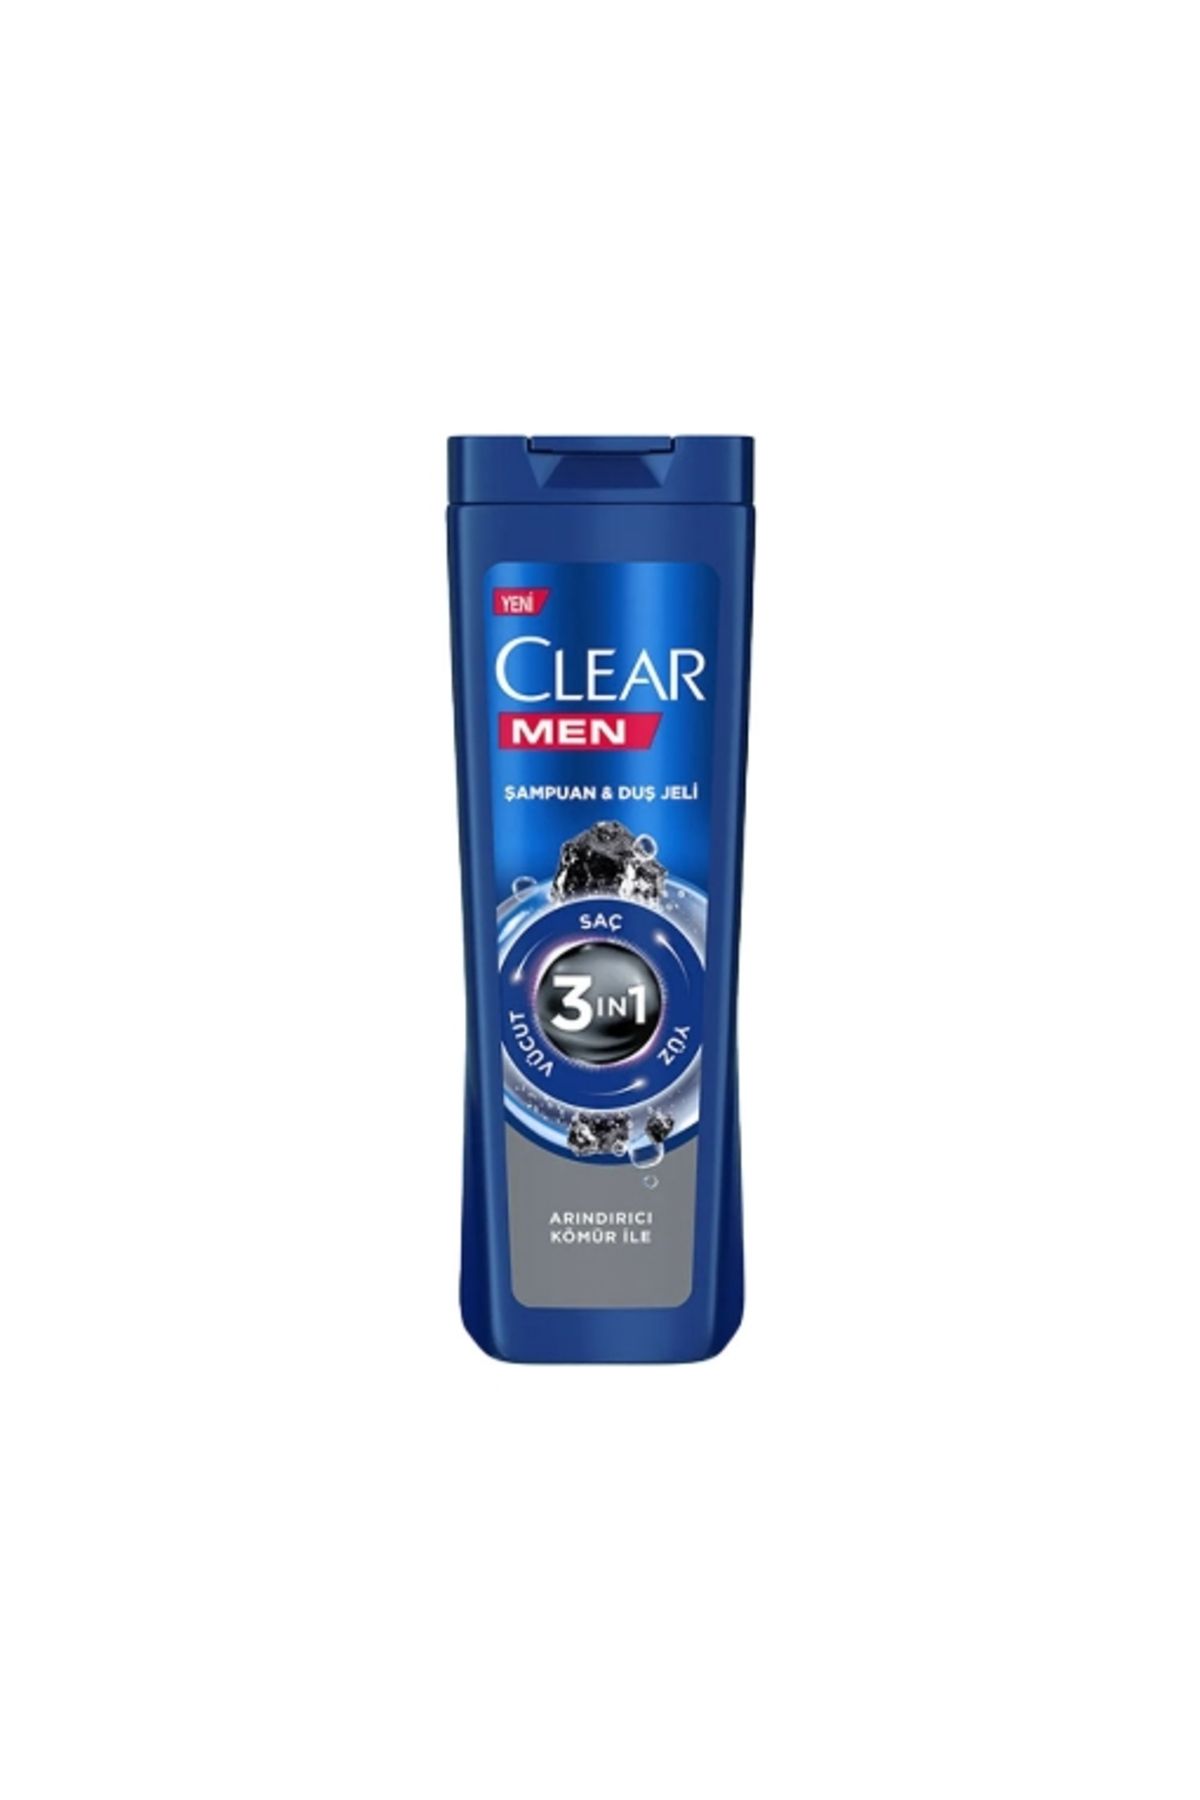 Clear Men Şampuan&duş Jeli 350 Ml. Arındırıcı (12'Lİ)